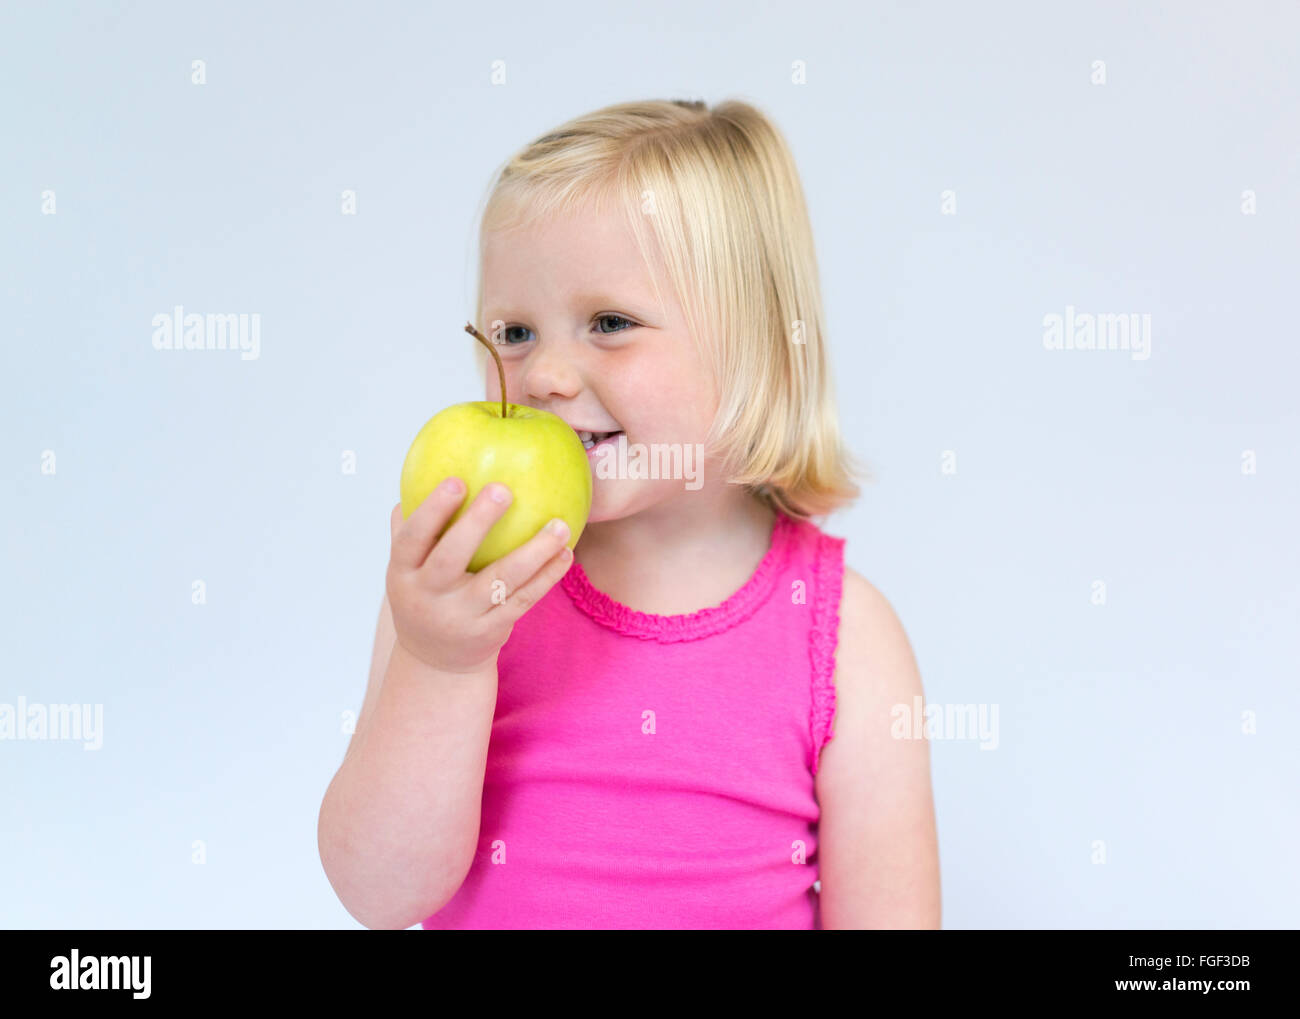 Jeune fille aux cheveux blonds holding a green apple smiling Banque D'Images